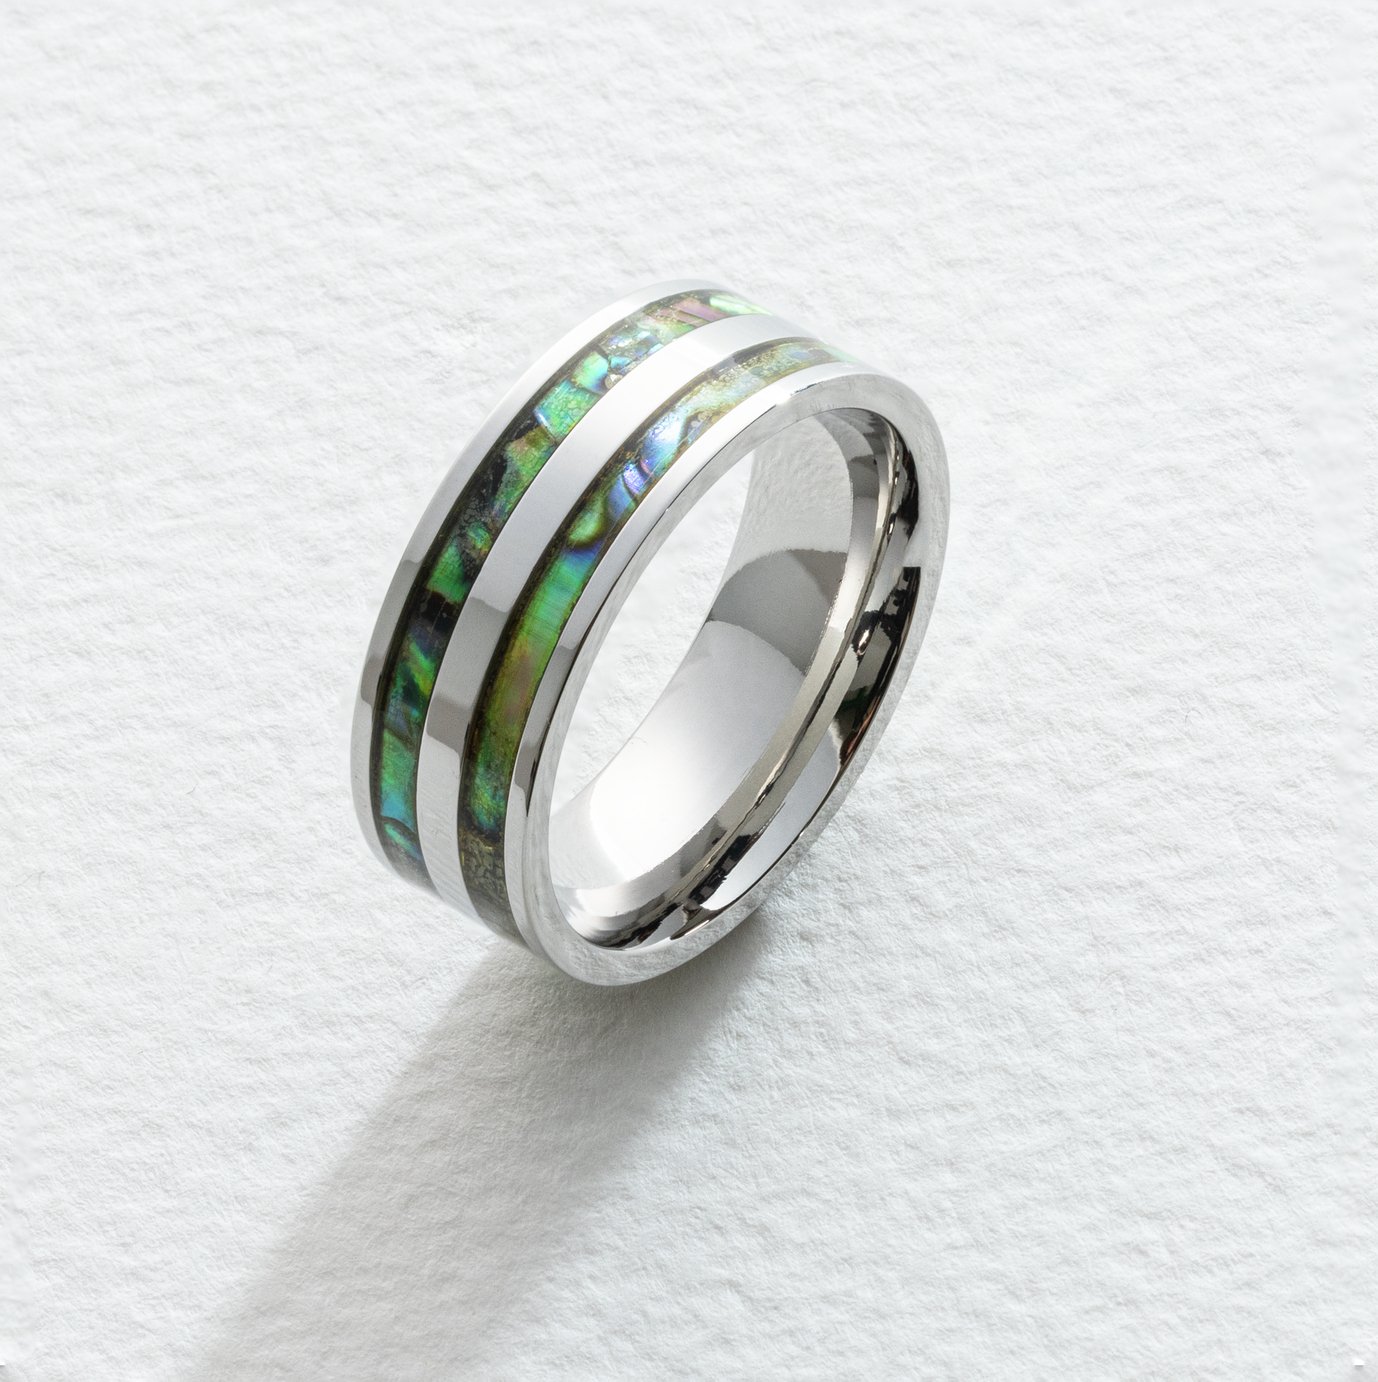 Revere Men's Stainless Steel Ring - Size U